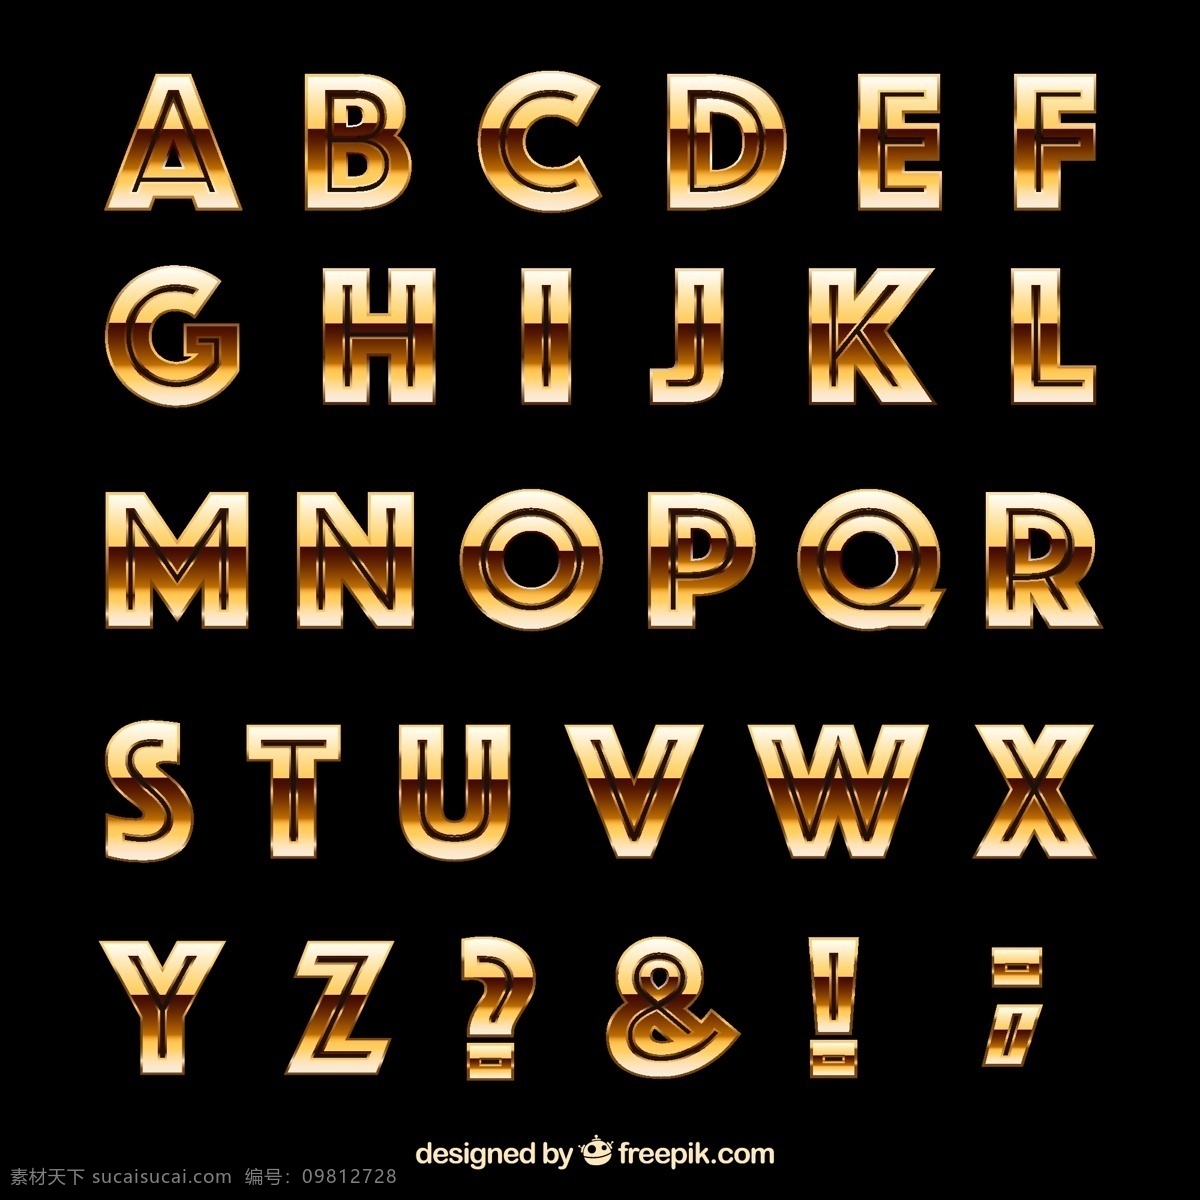 字母设计 手绘字母 彩色字母 26个英文字 大小写 字母标识 拼音 创意字母 字母 英文 英文字母 26个字母 立体字母 卡通字母 动物字母 数字 标点 符号 标点符号 卡通数字 立体数字 阿拉伯数字 平面素材 黑色